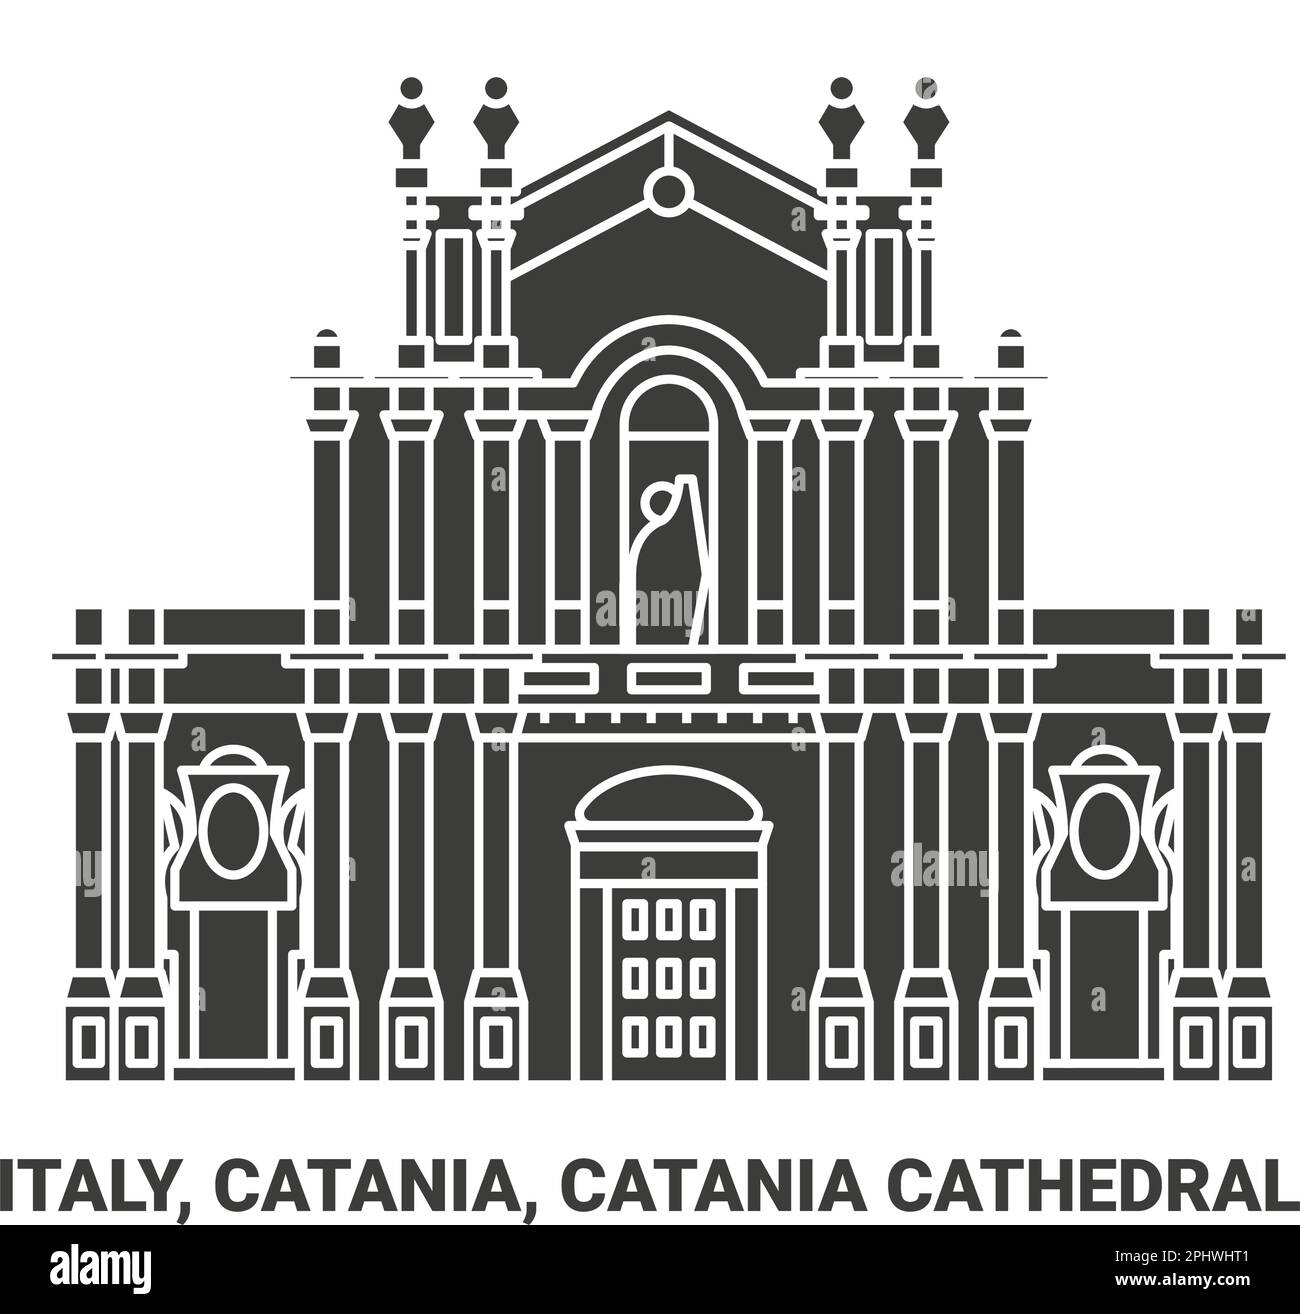 Italien, Catania, Catania Kathedrale Reise Wahrzeichen Vektordarstellung Stock Vektor